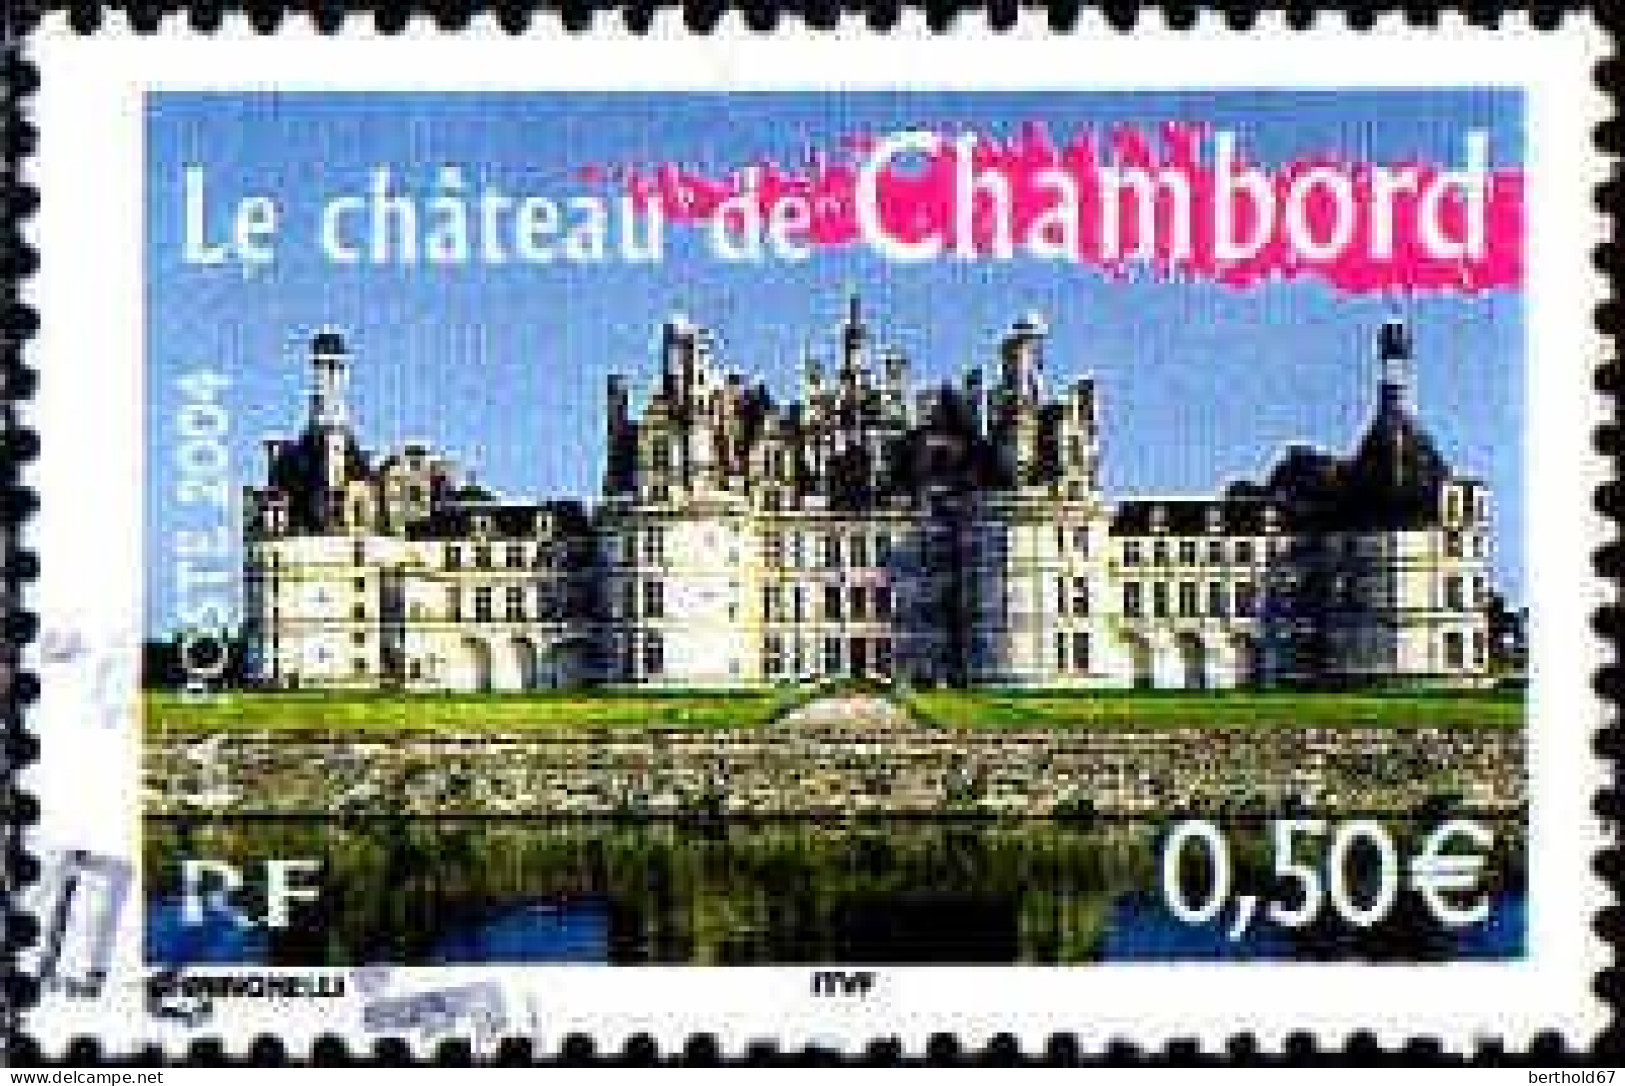 France Poste Obl Yv:3703 Mi:3851 Le Château De Chambord (Beau Cachet Rond) - Gebraucht